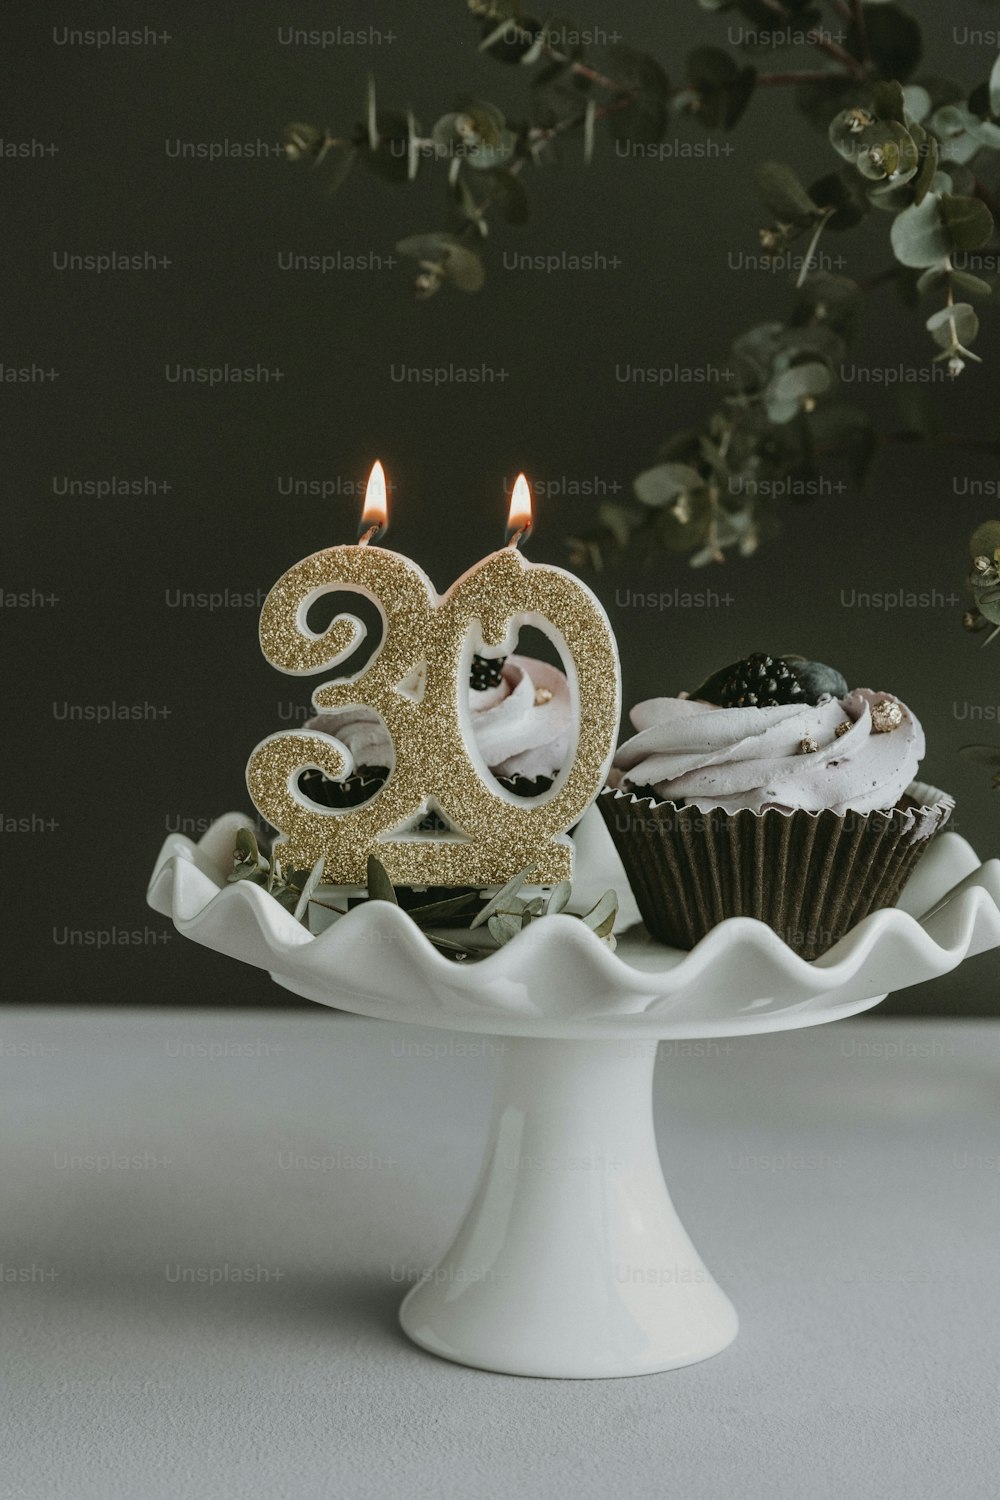 un piatto da torta bianco sormontato da cupcakes e una candela